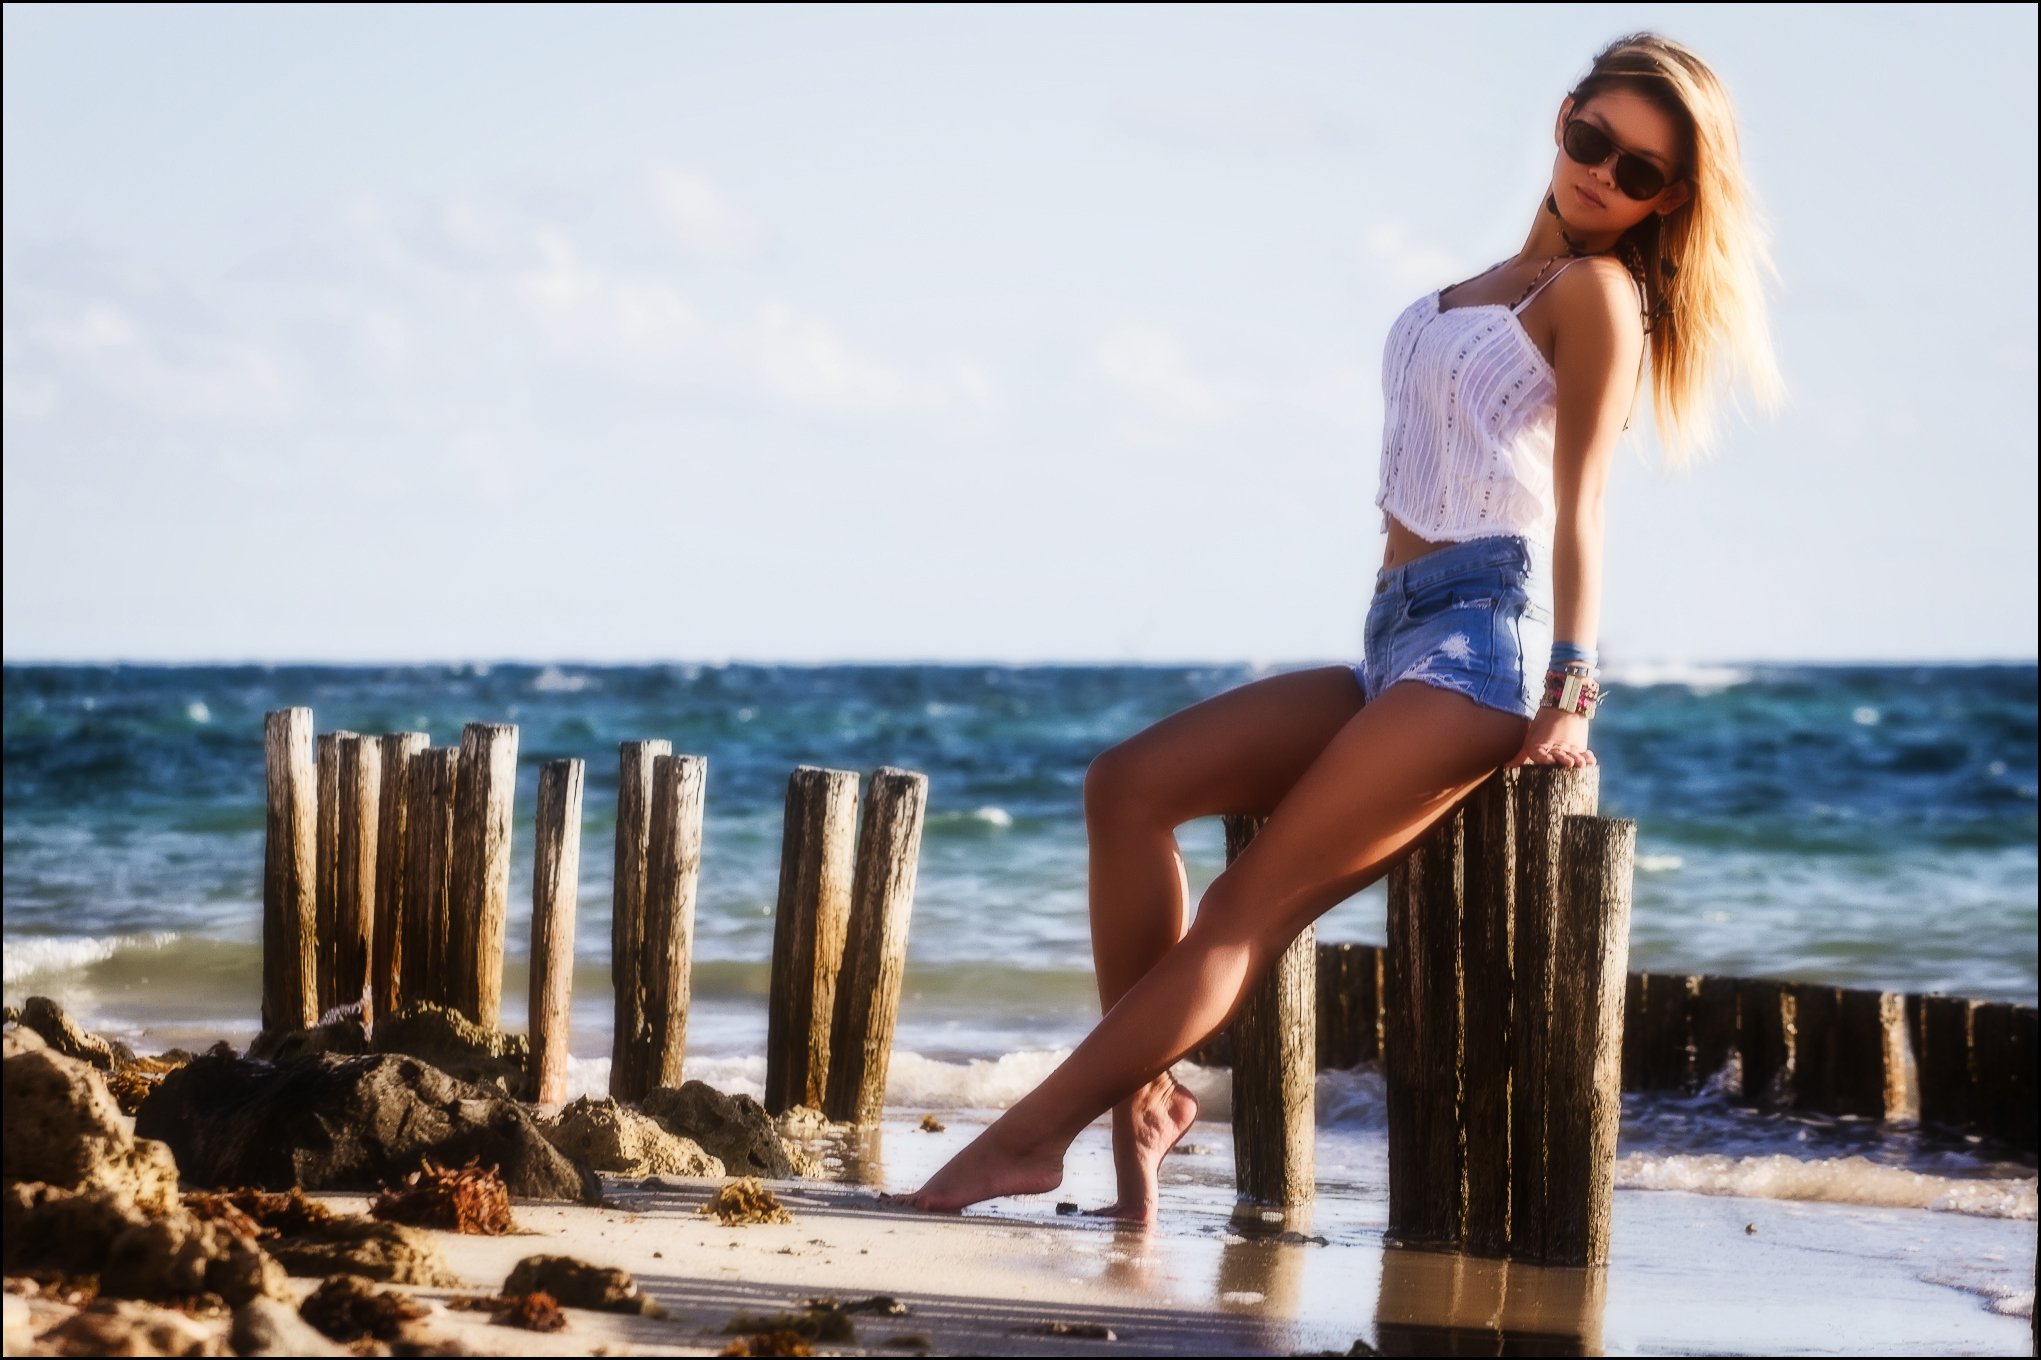 Море шорты. Девушка в шортах. Фотосессия на пляже в шортах. Красивые девушки на пляже в шортах. Девушка в шортах на пляже.